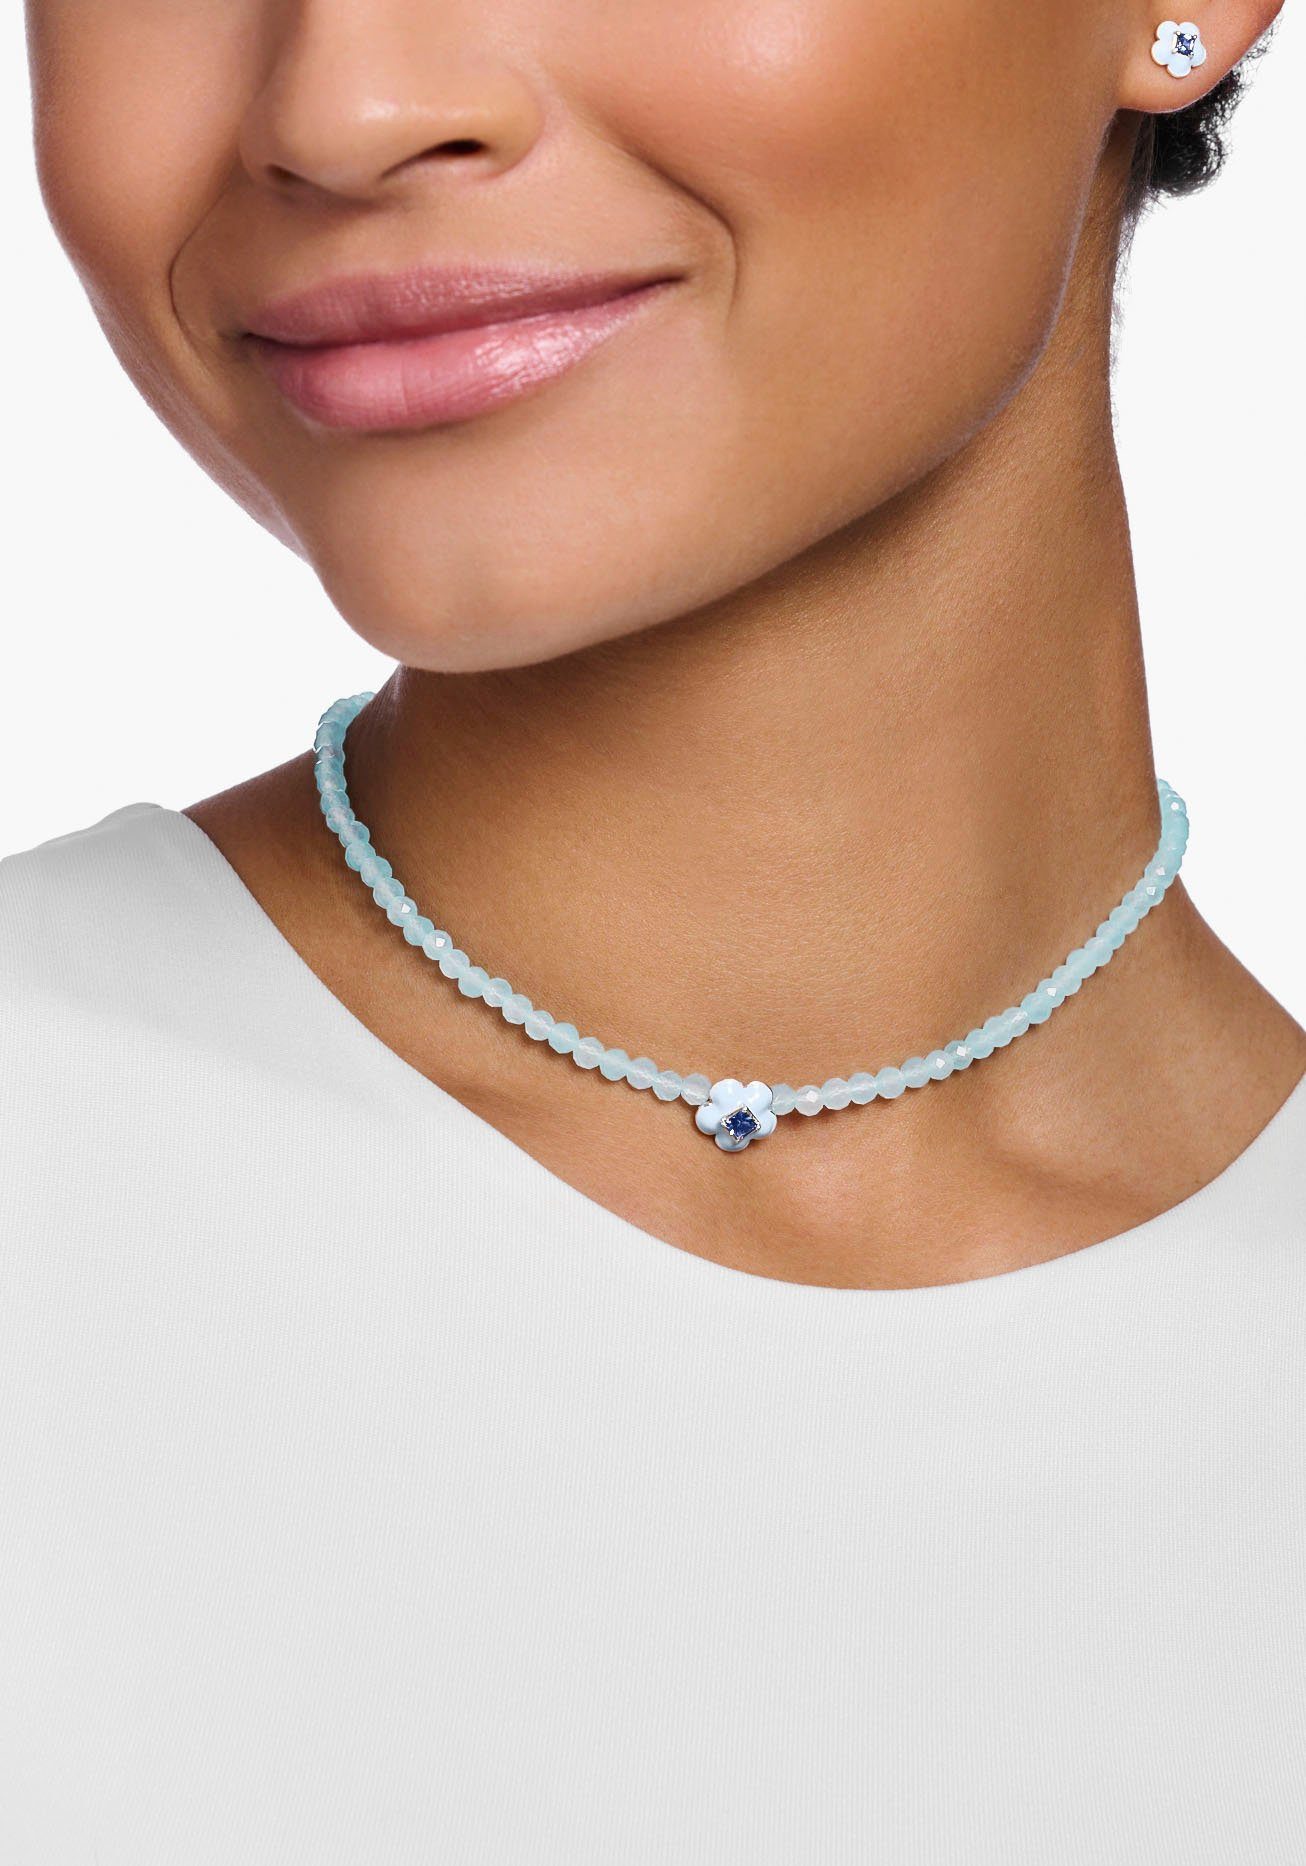 Choker kleinen, Halskette Perlen, SABO rundgeschliffenen KE2182-496-1-L42V, Enganliegende mit THOMAS blauen Stein, Choker Jade-Beads aus Glas-Keramik mit Blume